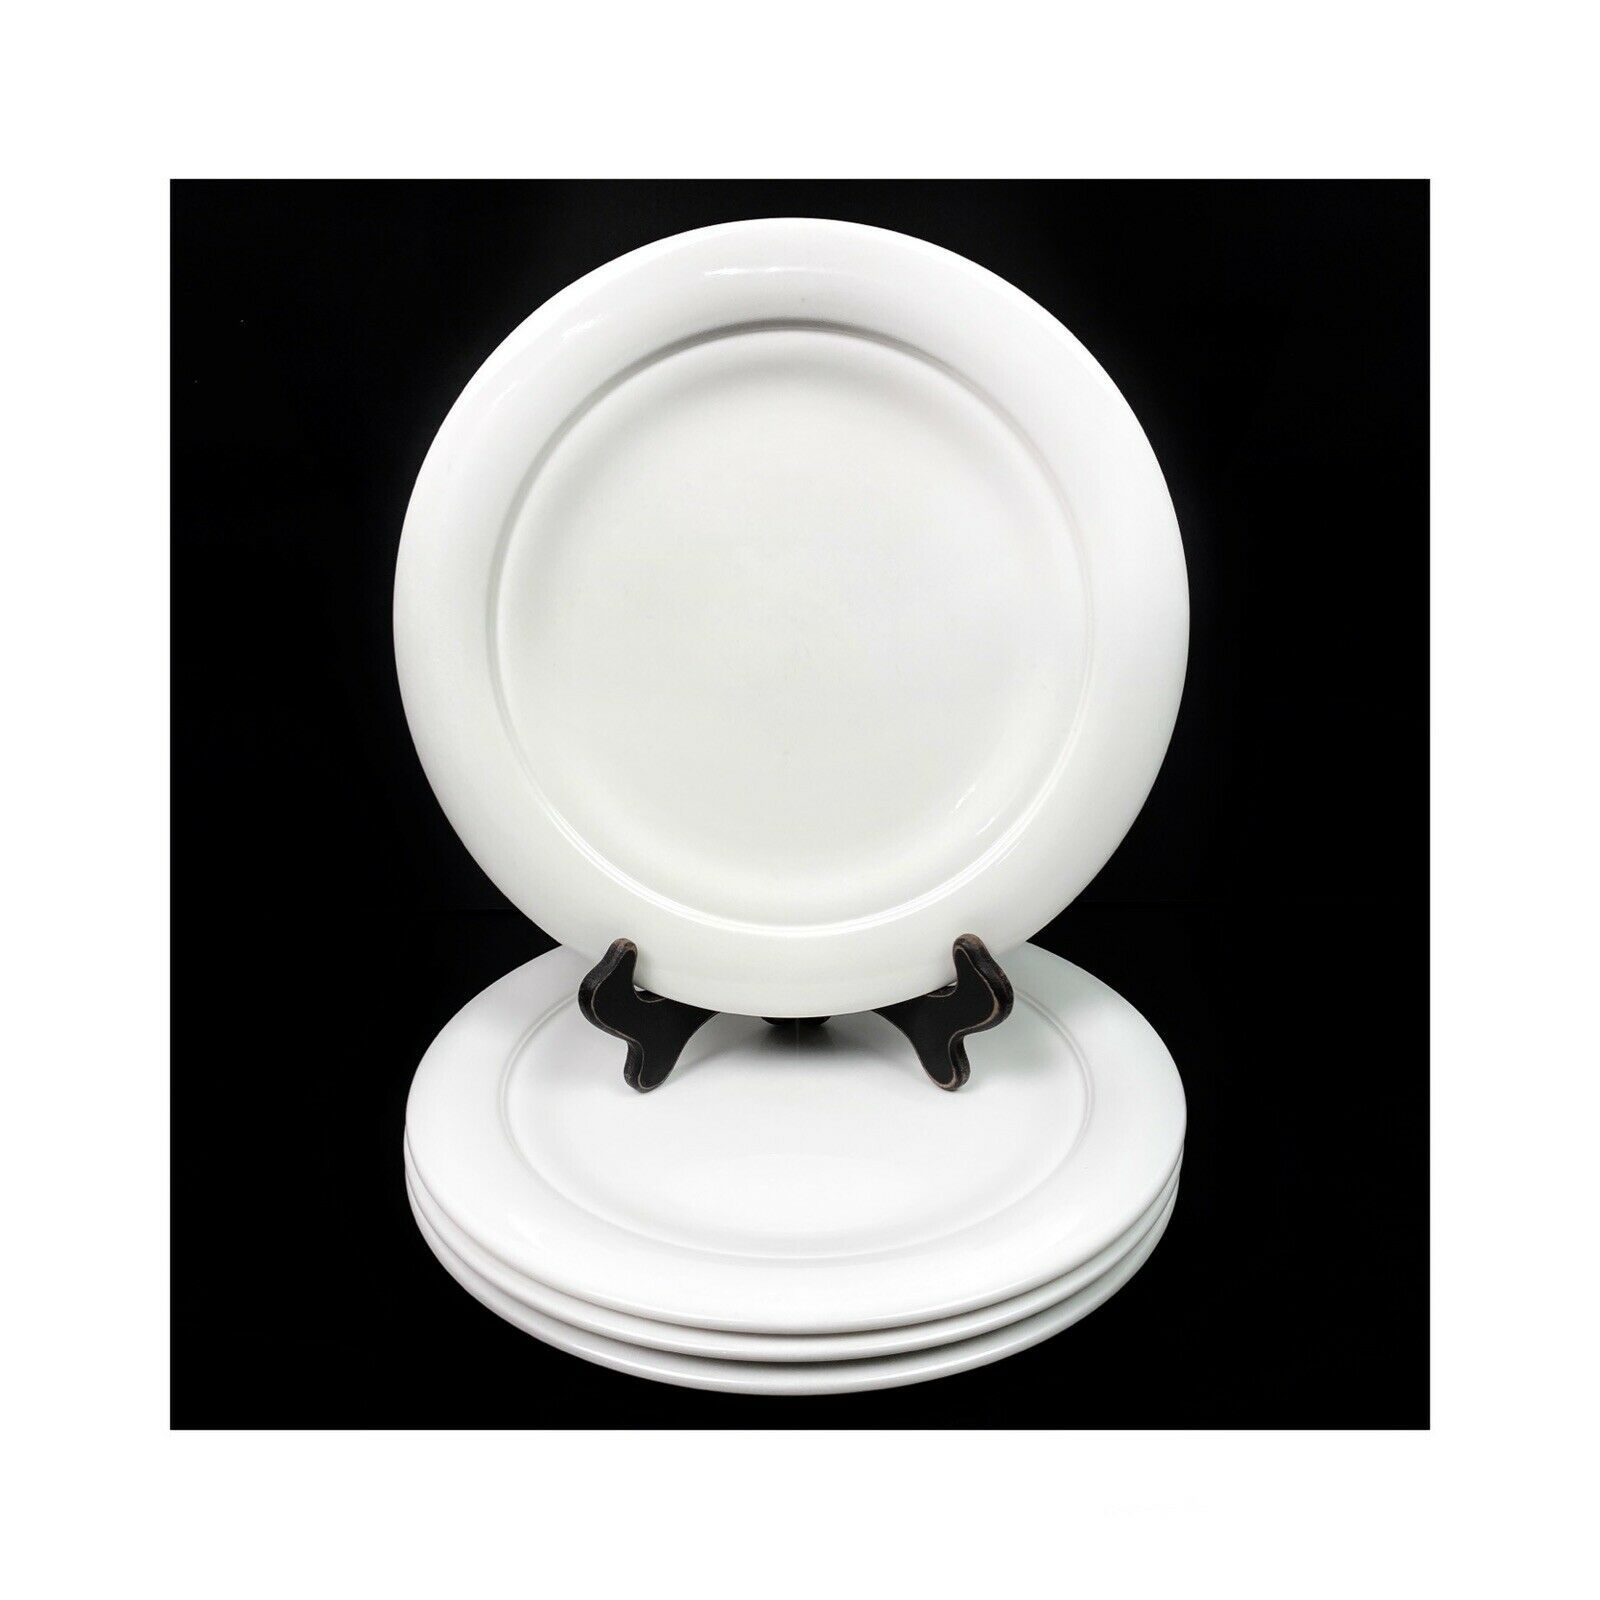 Lenox Aspen Ridge Dinner Plates 11" white - $74.10